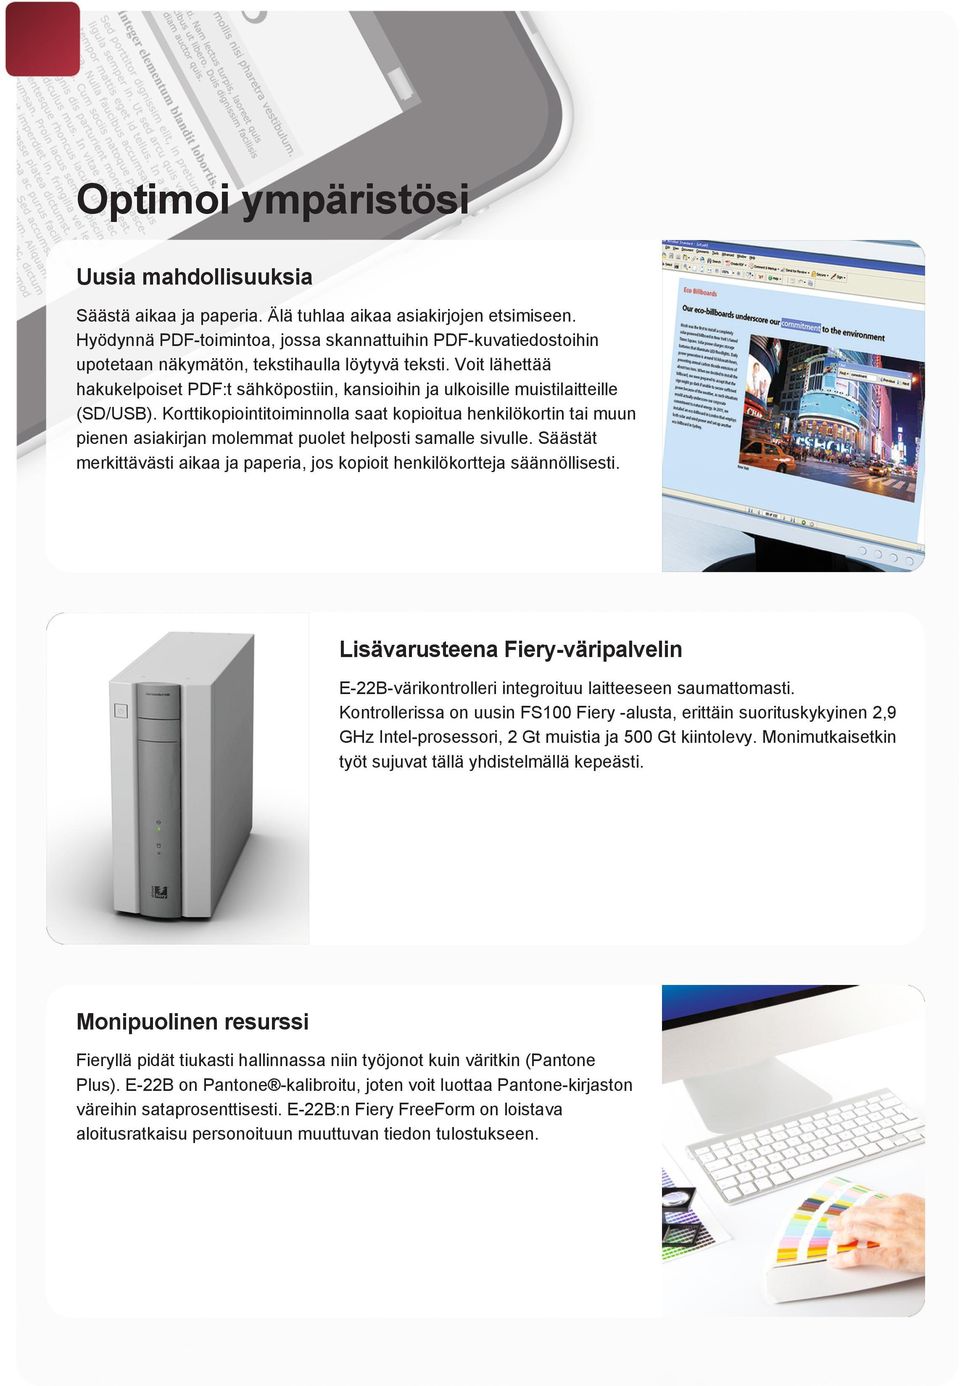 Voit lähettää hakukelpoiset PDF:t sähköpostiin, kansioihin ja ulkoisille muistilaitteille (SD/USB).